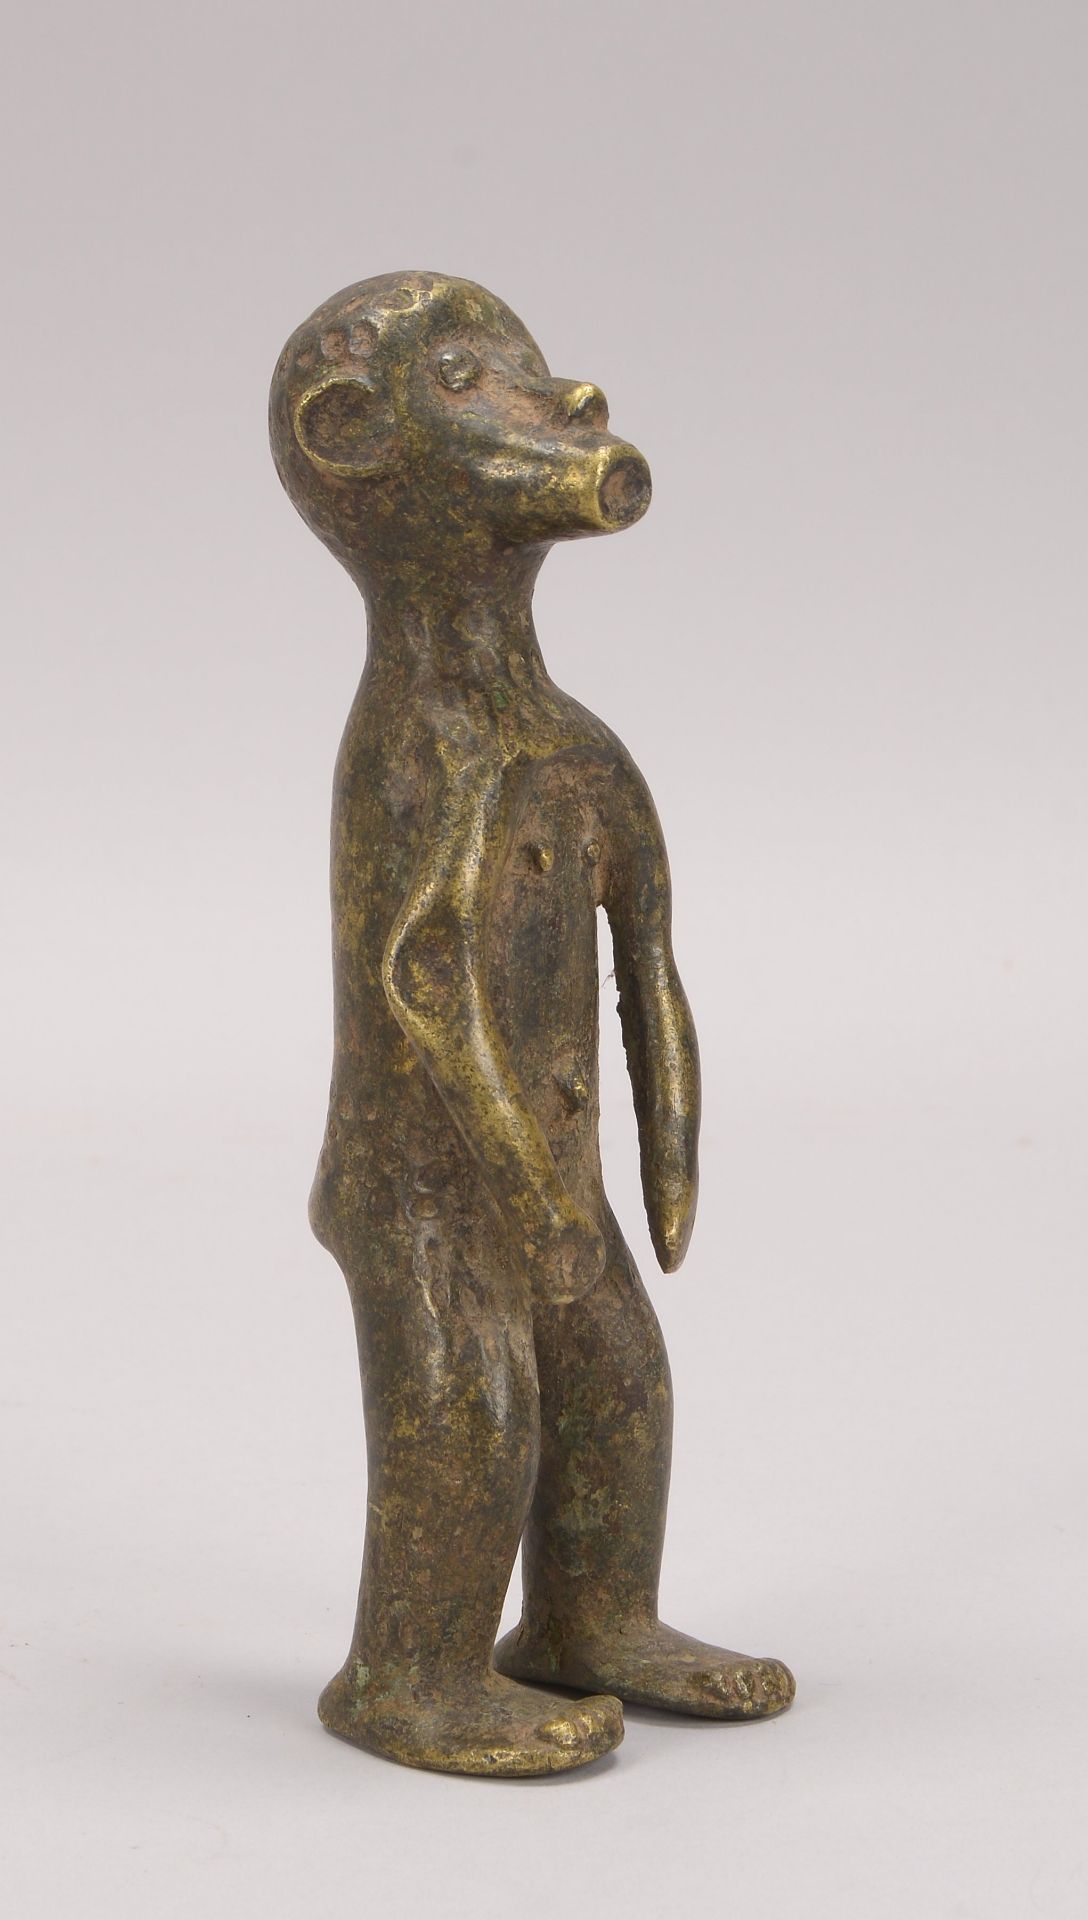 Bronzeskulptur (Afrika), -Stehender Mann-, Figur in leicht abstrahierter Gestaltung, Hoehe 21 cm - Image 2 of 2